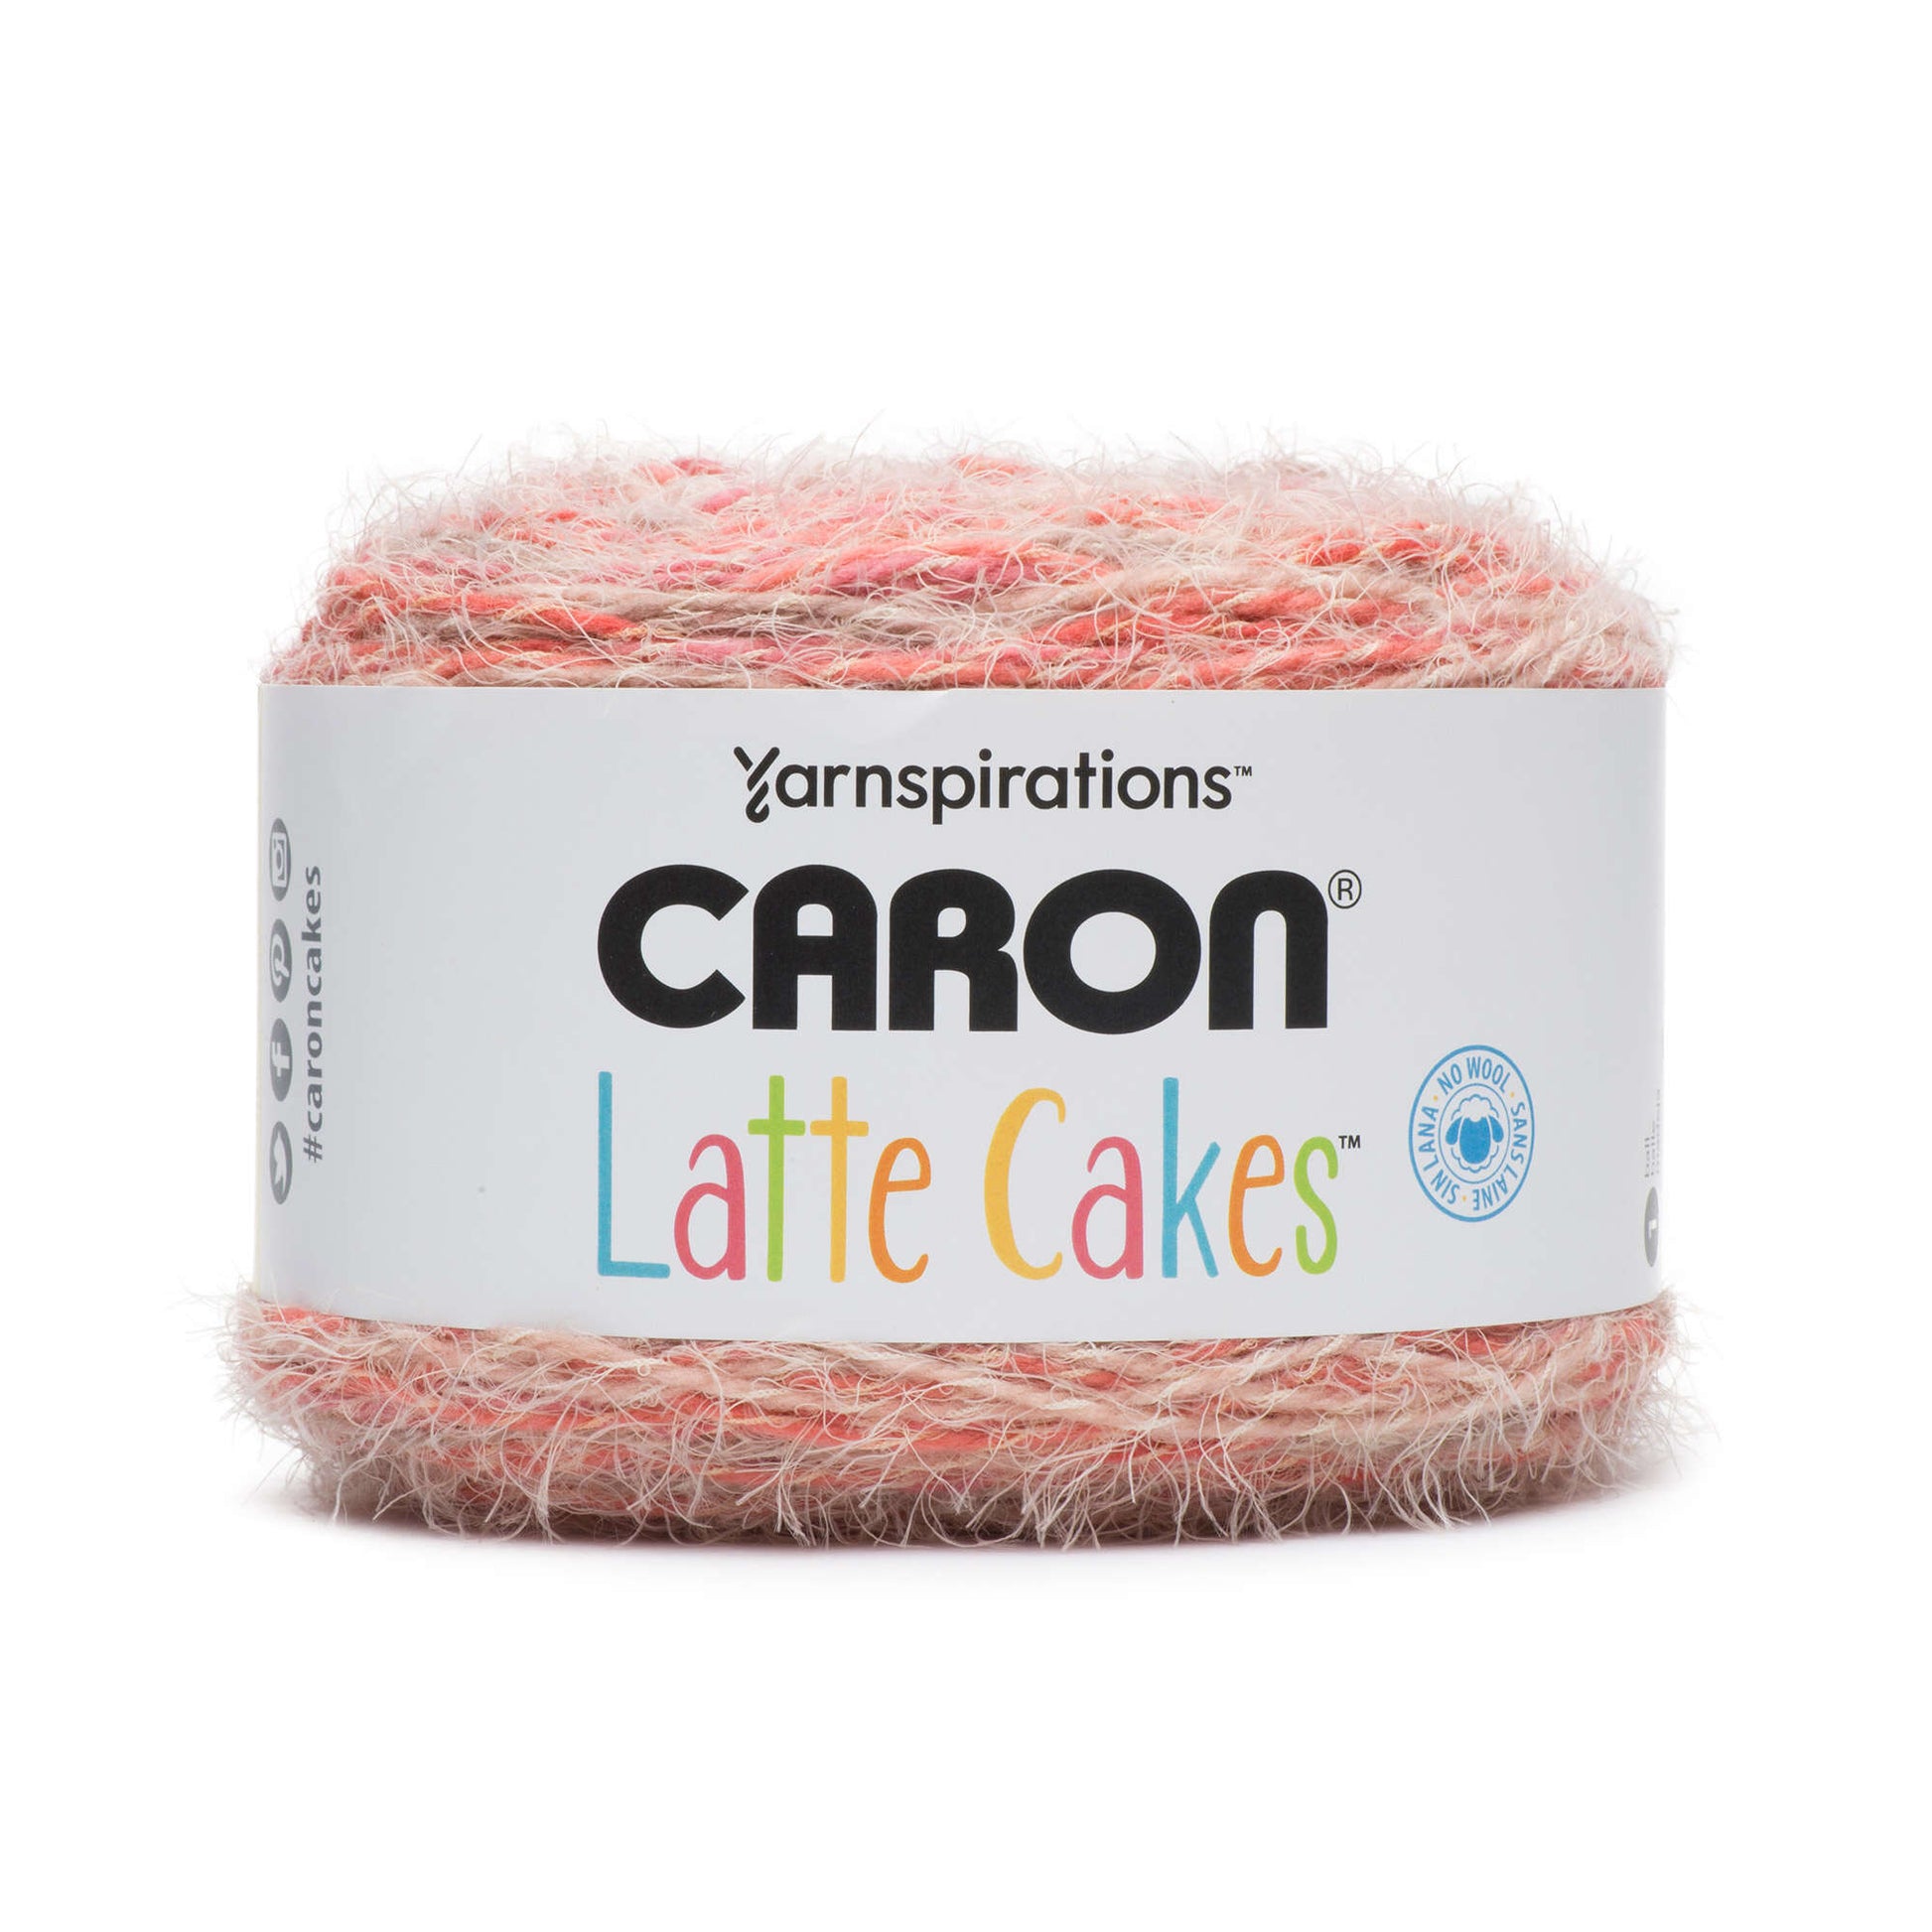 Caron Latte Cakes Yarn Red Macaron